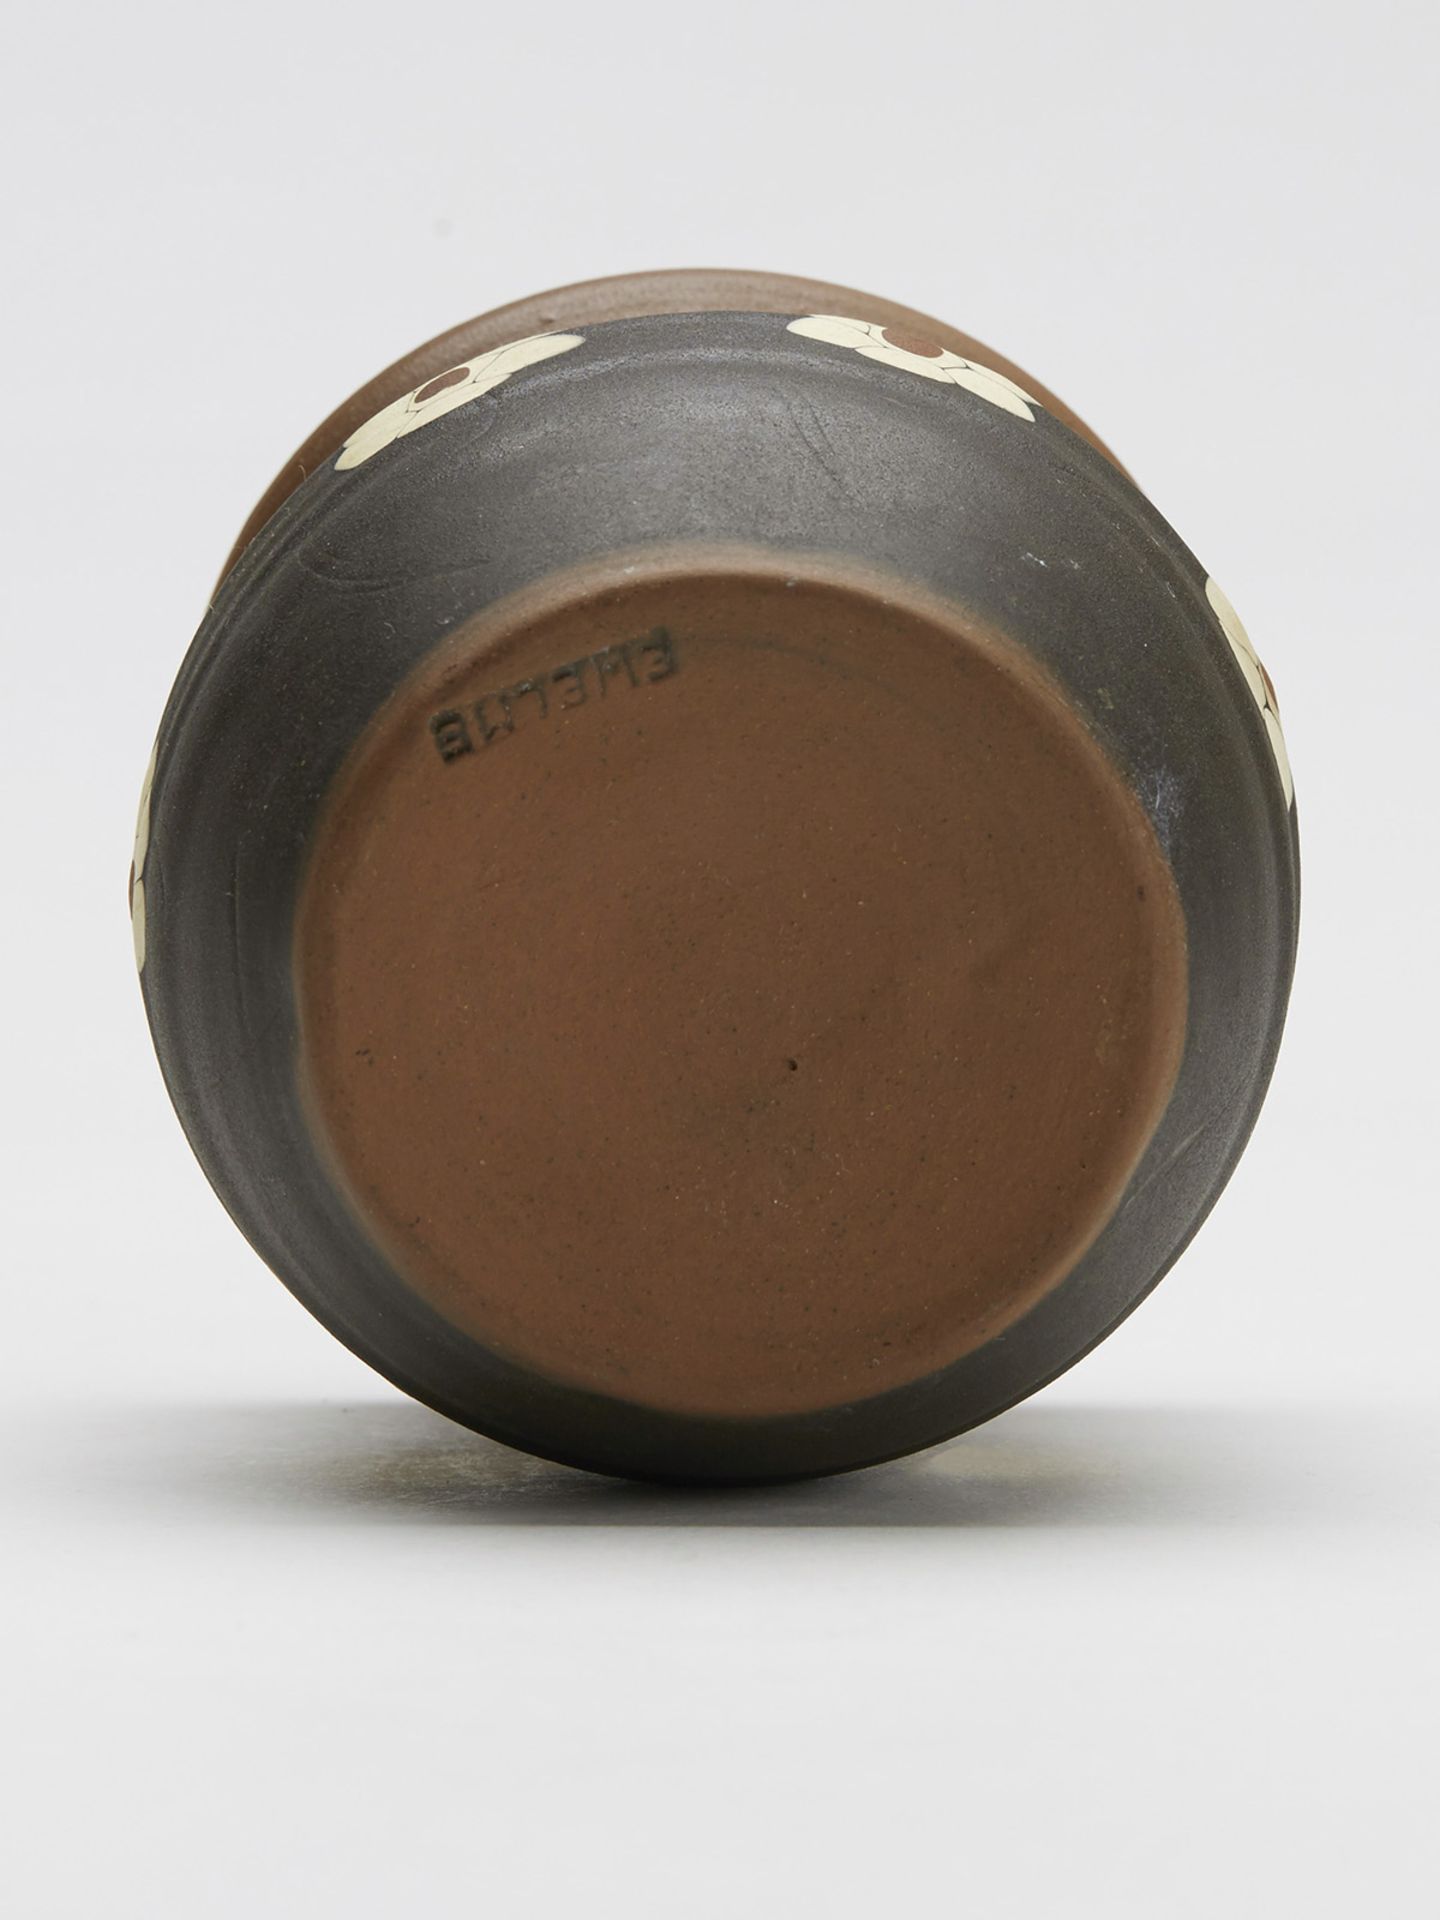 Ewelme Studio Pottery Slipware Jar 20Th C. - Image 7 of 8